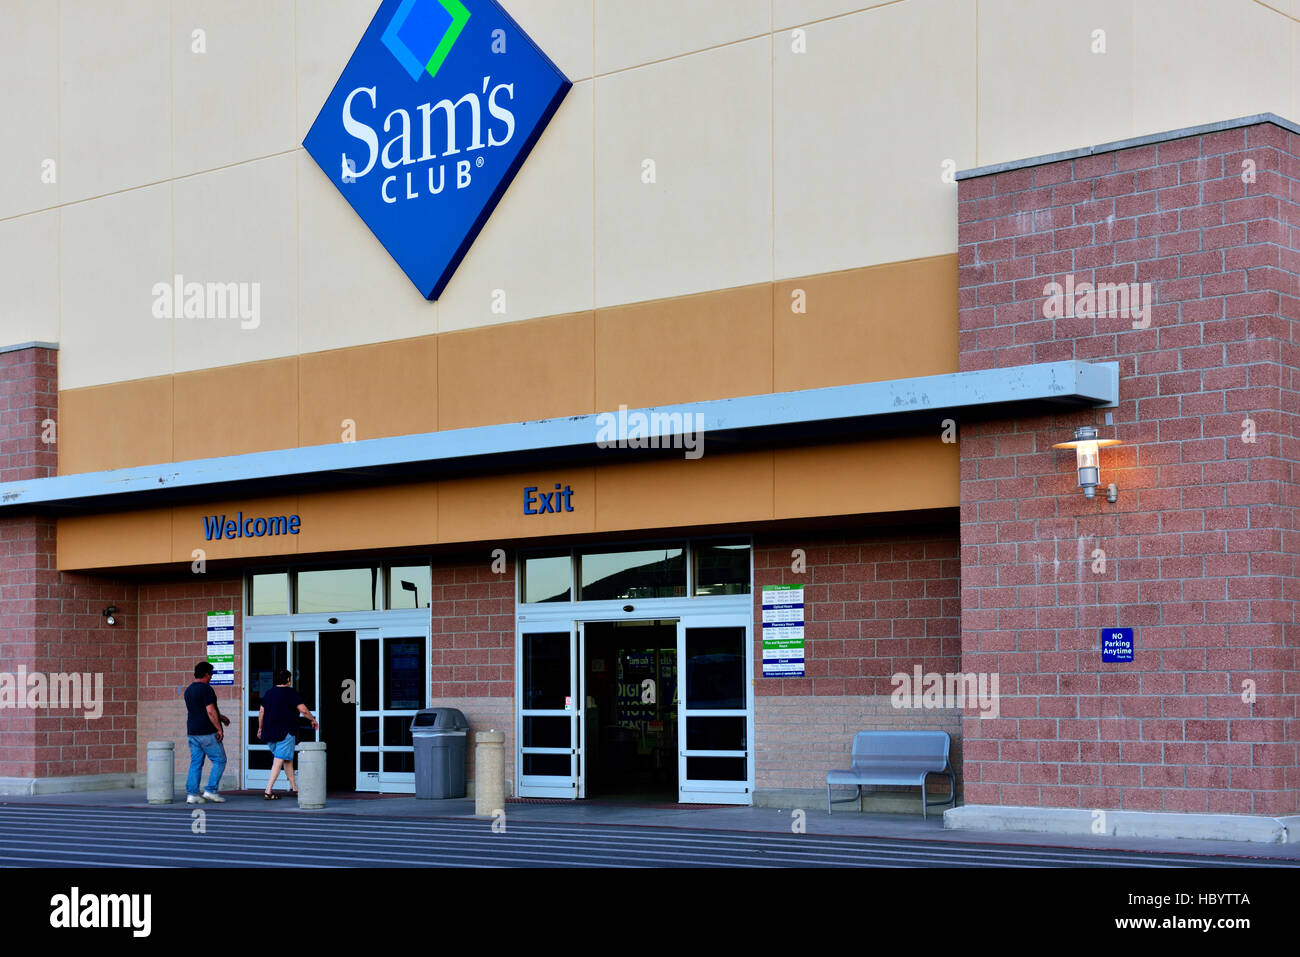 Sams club usa fotografías e imágenes de alta resolución - Alamy